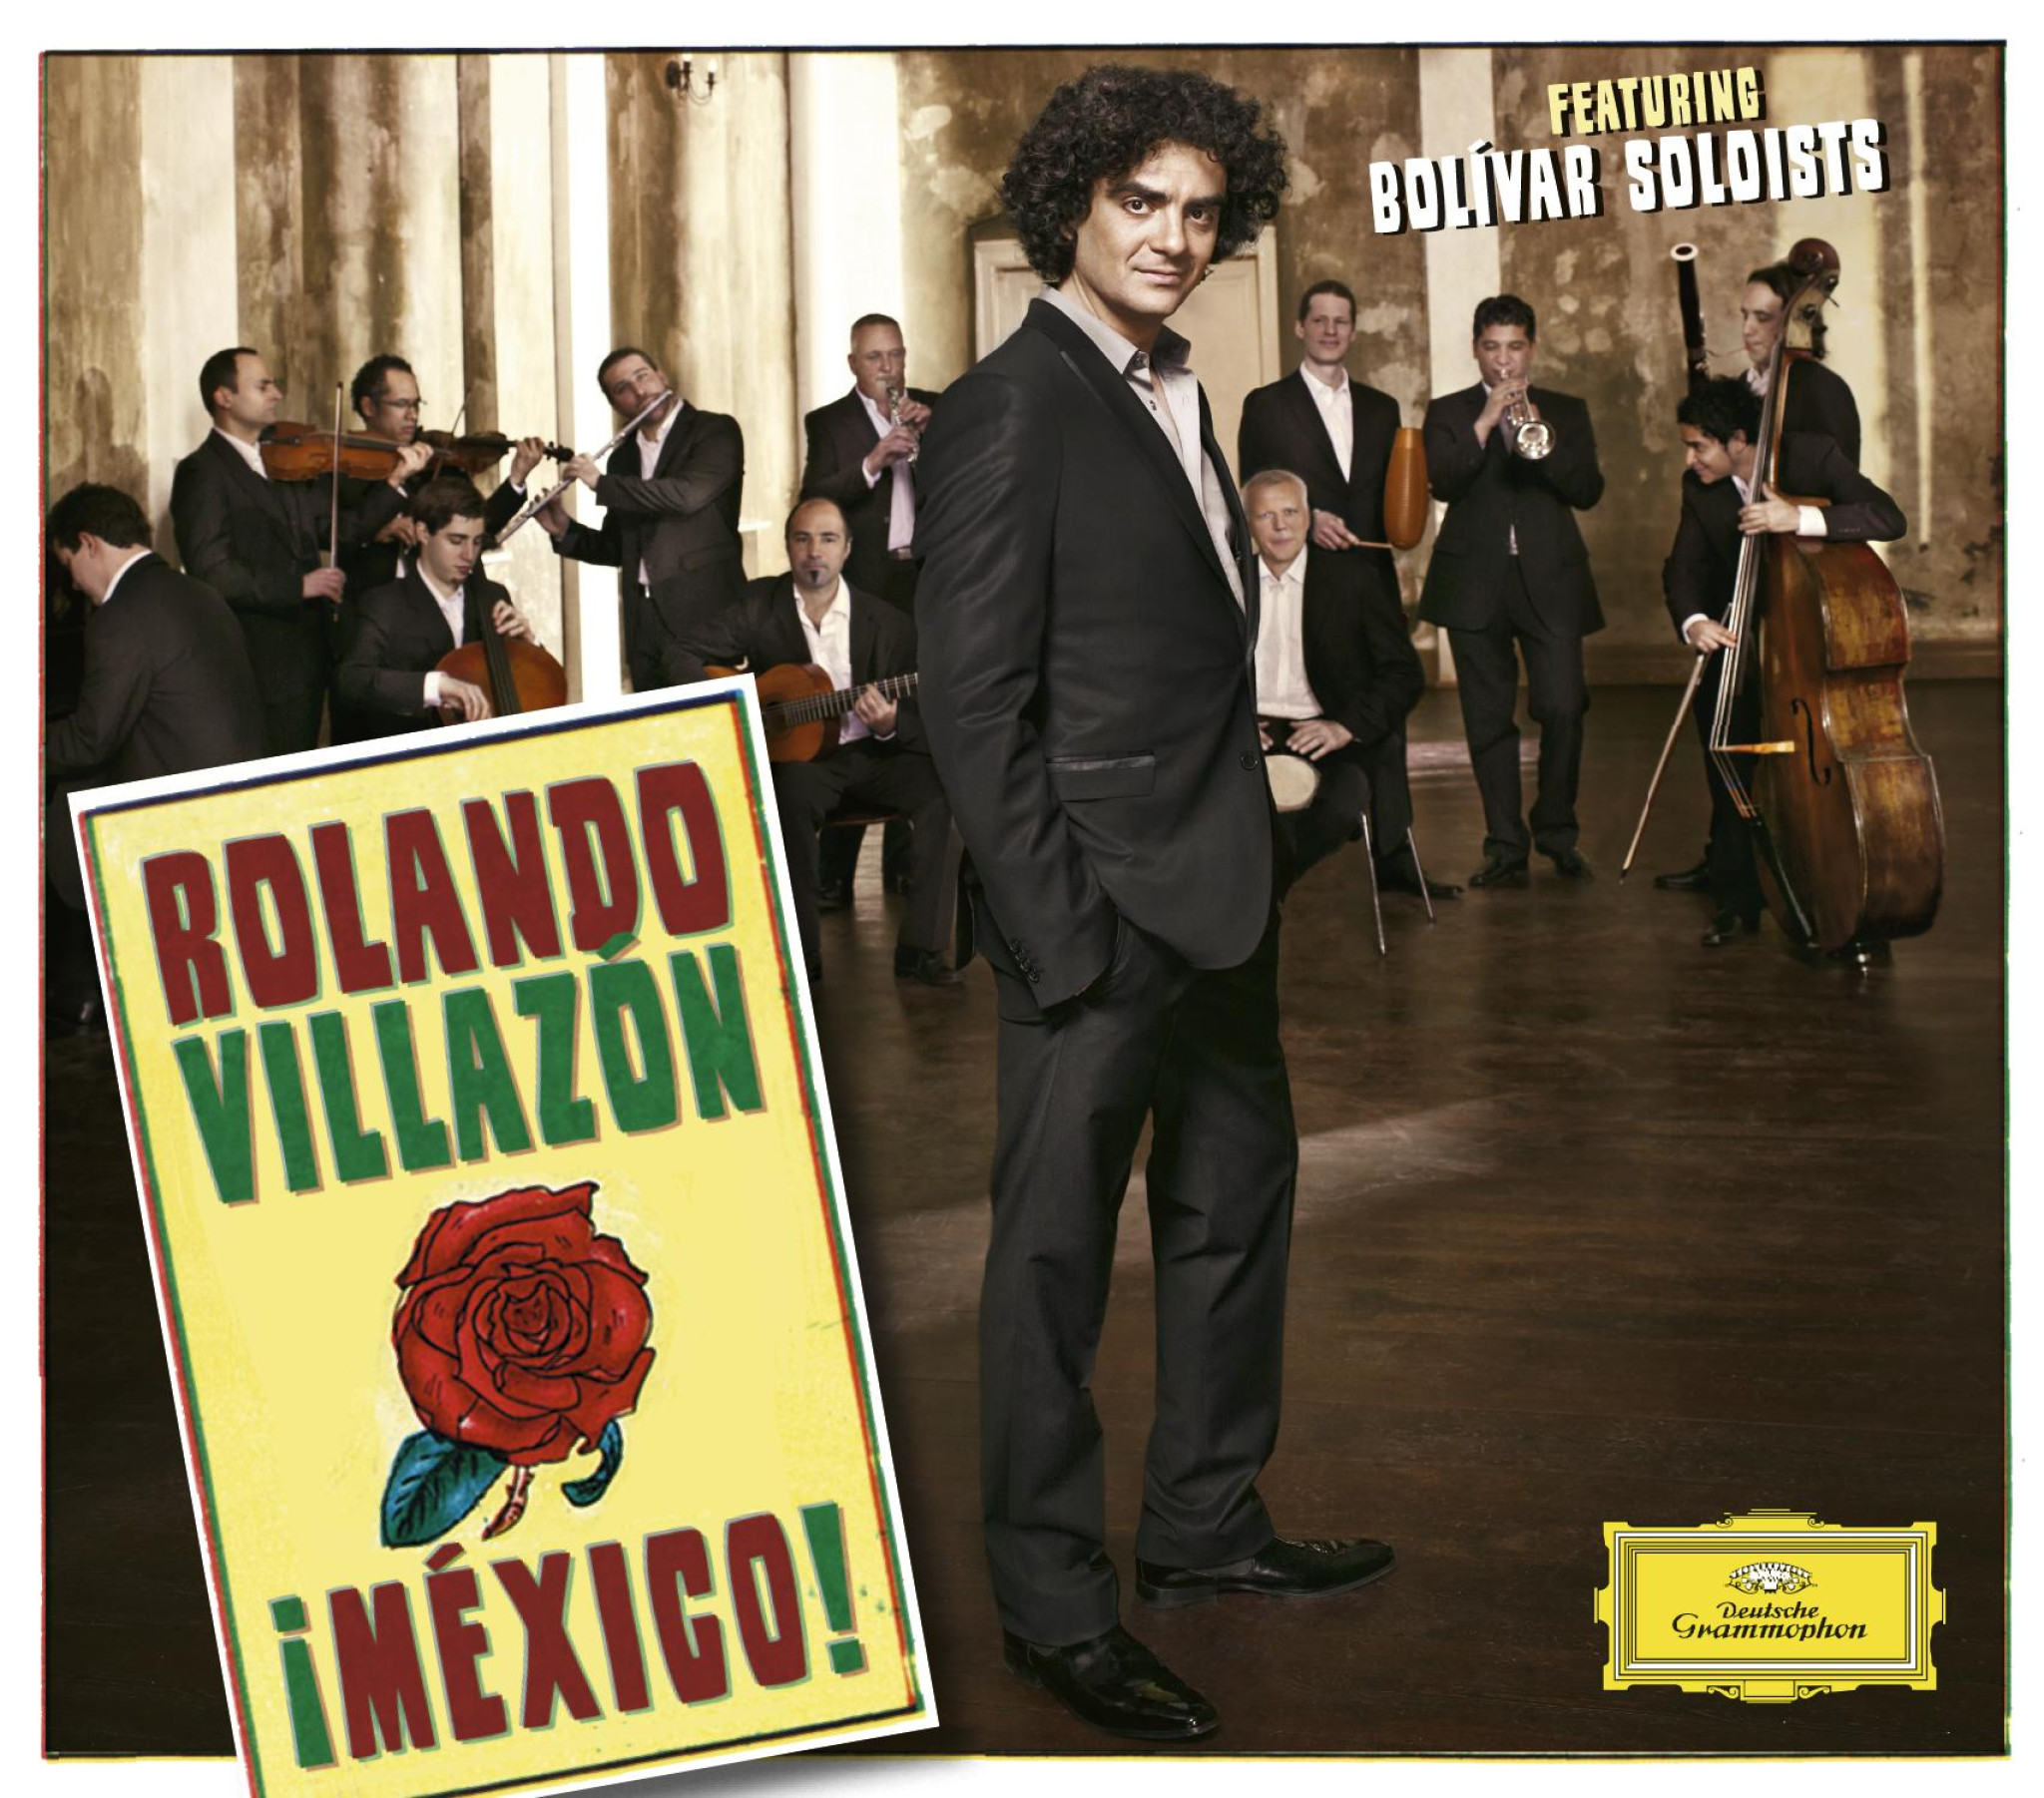 Rolando Villazon - ¡Mexico! © by DG